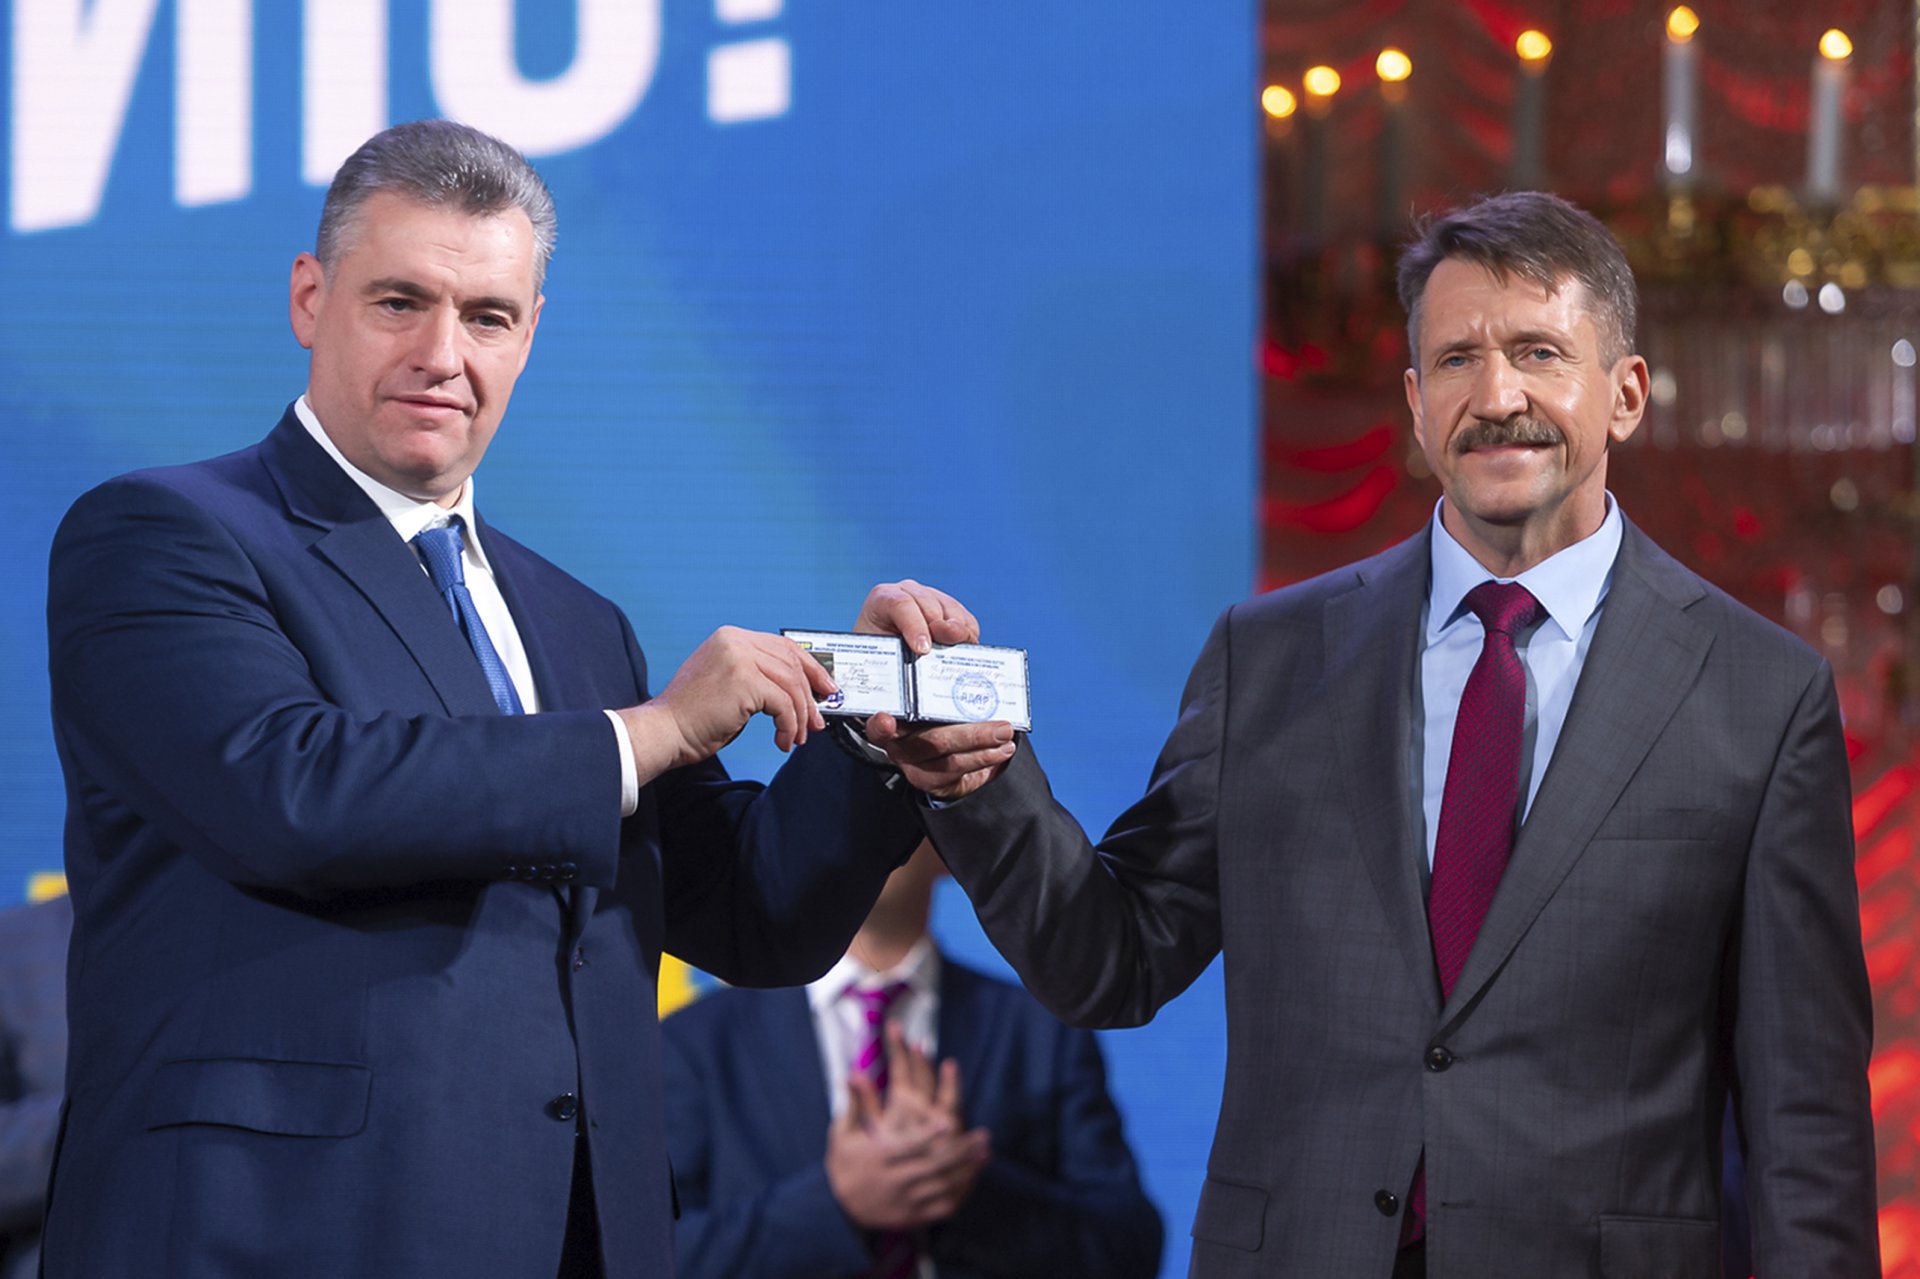 Леонид Слуцки (вляво) връчва на Виктор Бут членската карта на Либерално-демократическата партия (ЛДПР)